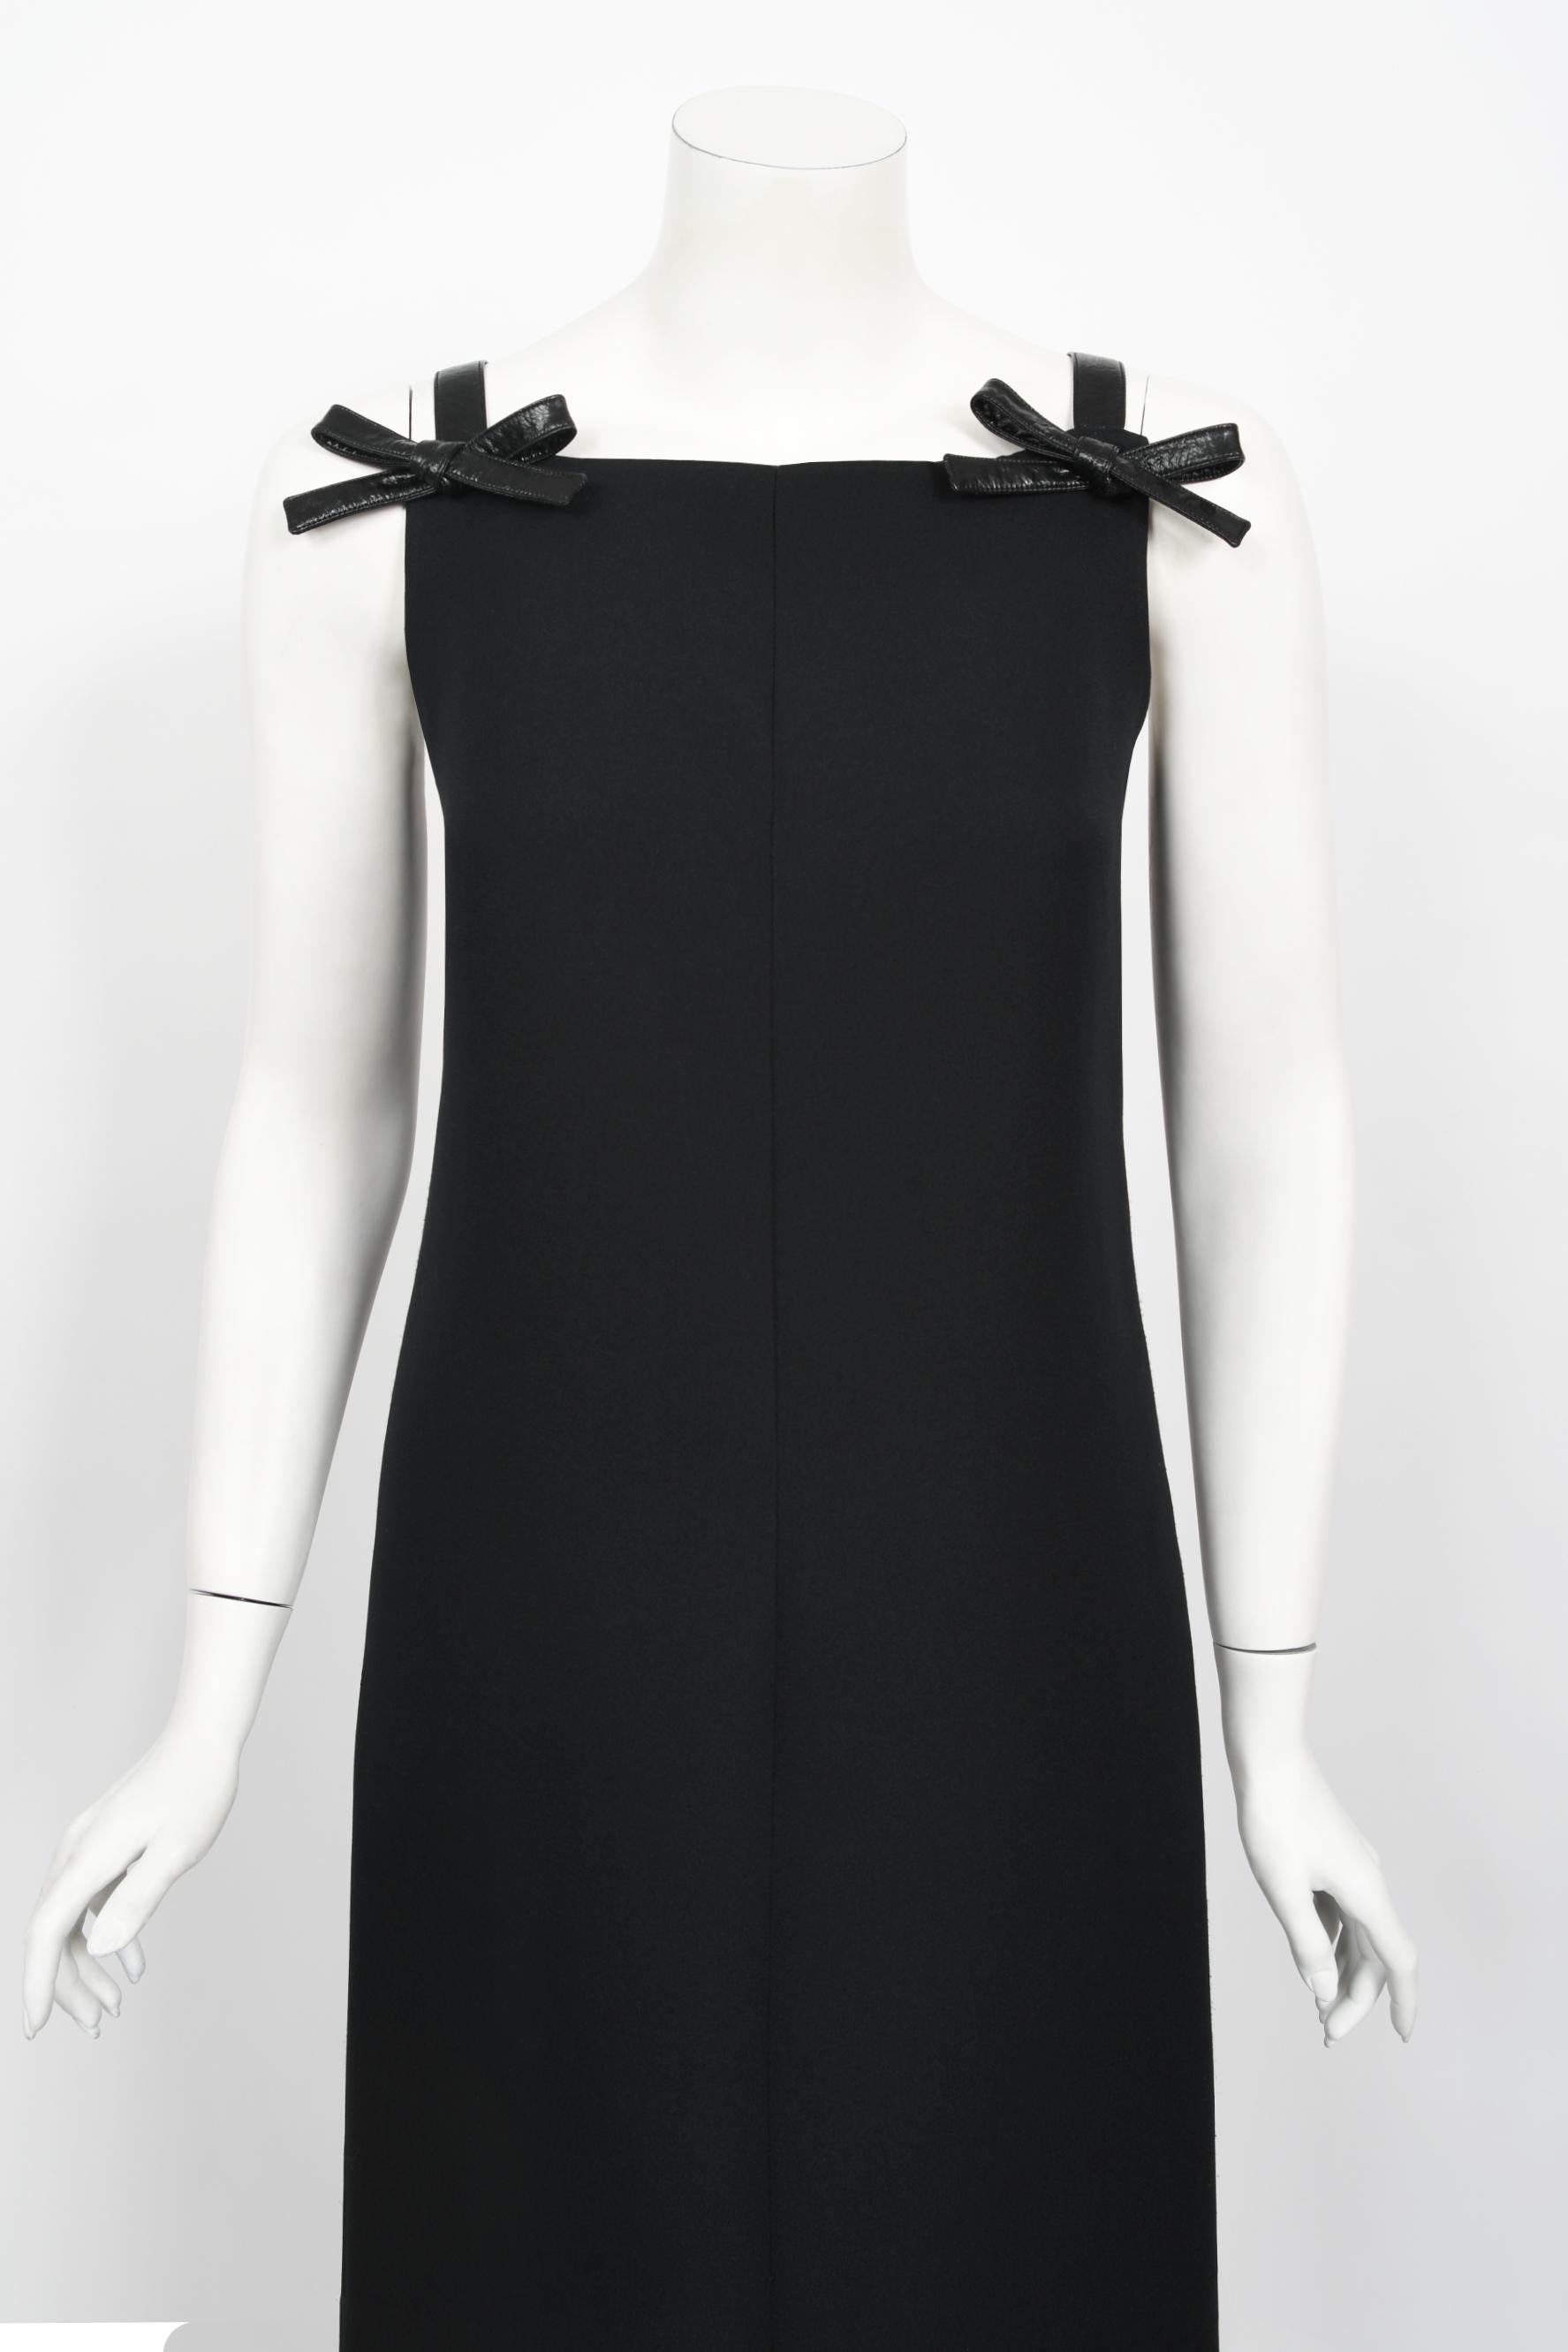 Ein ultraschickes, schwarzes, minimalistisches Kleid von André Courrèges Paris aus den späten 1960er Jahren. Andre Courreges brachte 1964 seine einzigartige Space-Age-Kollektion auf den Markt. Die Formen seiner Kleidung waren geometrisch: Quadrate,